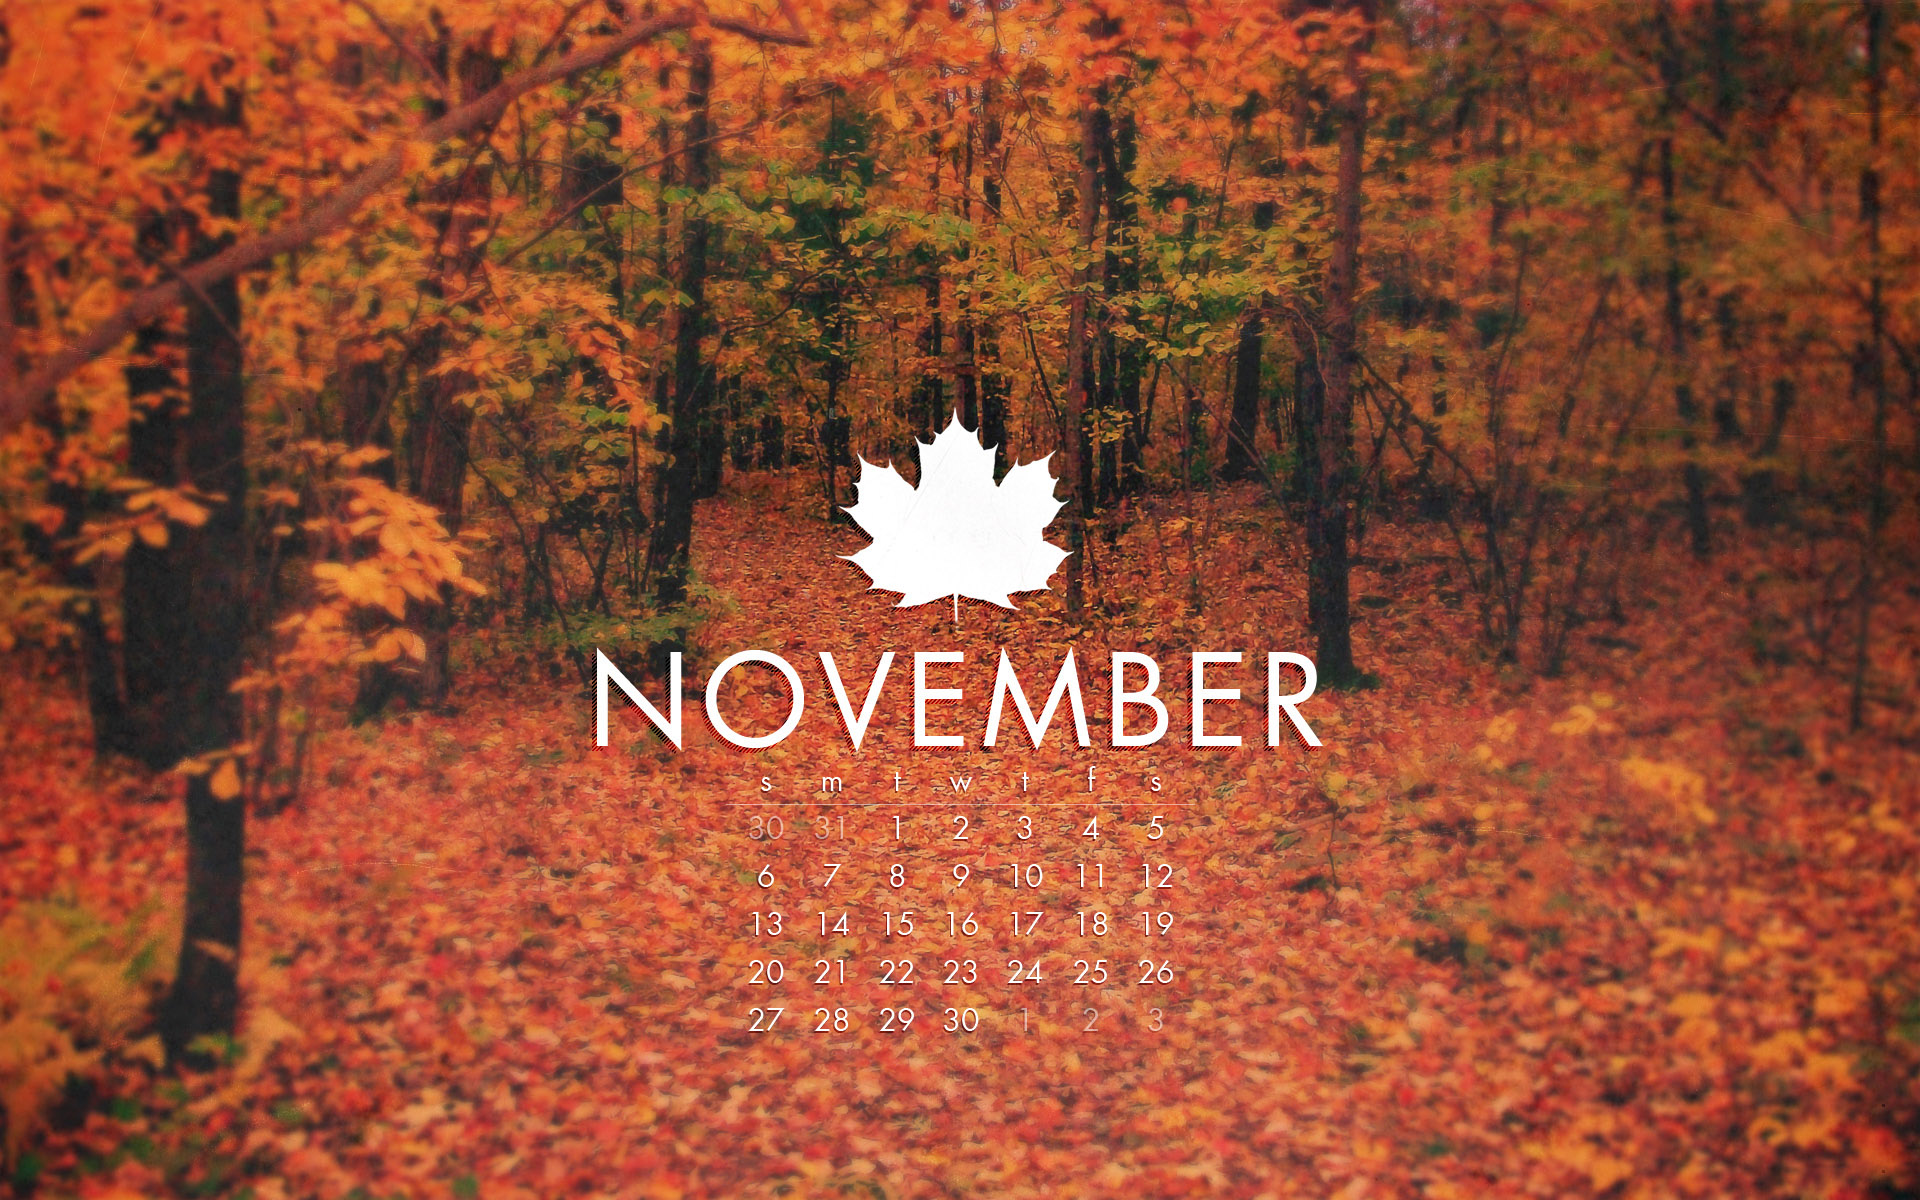 fond d'écran novembre hd,la nature,feuille,arbre,paysage naturel,l'automne